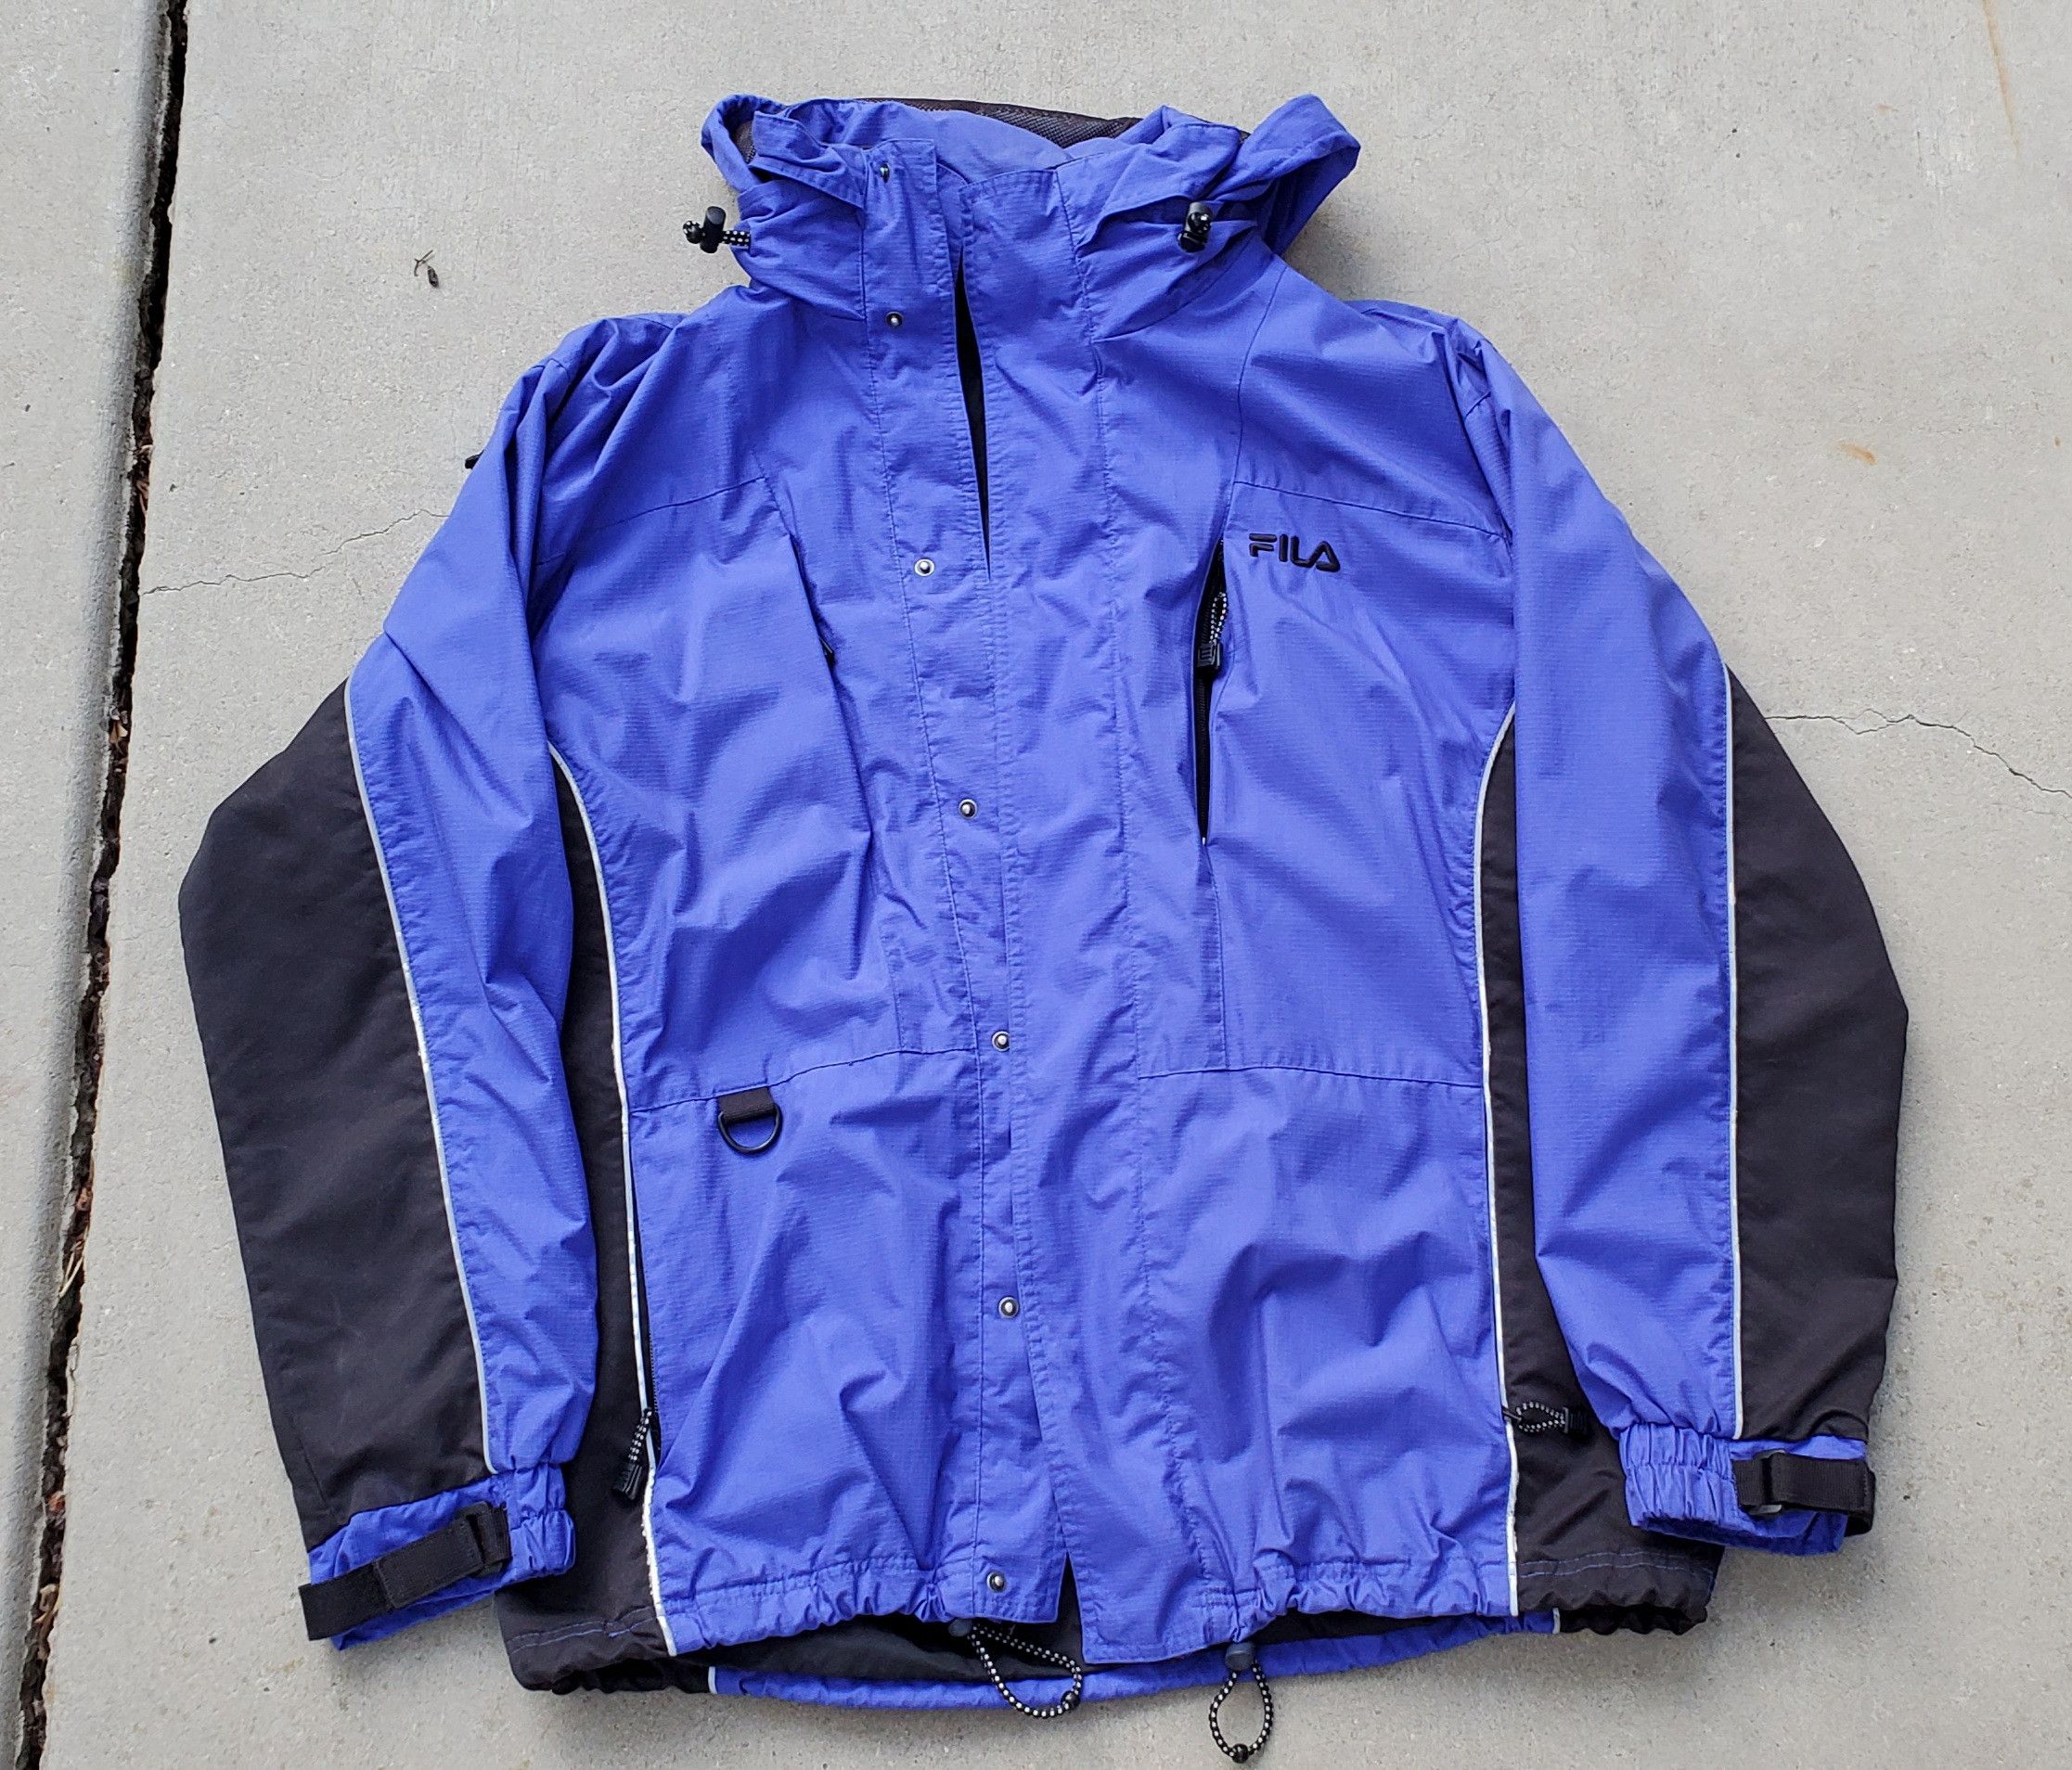 Vintage Fila Rain Jacket | Grailed